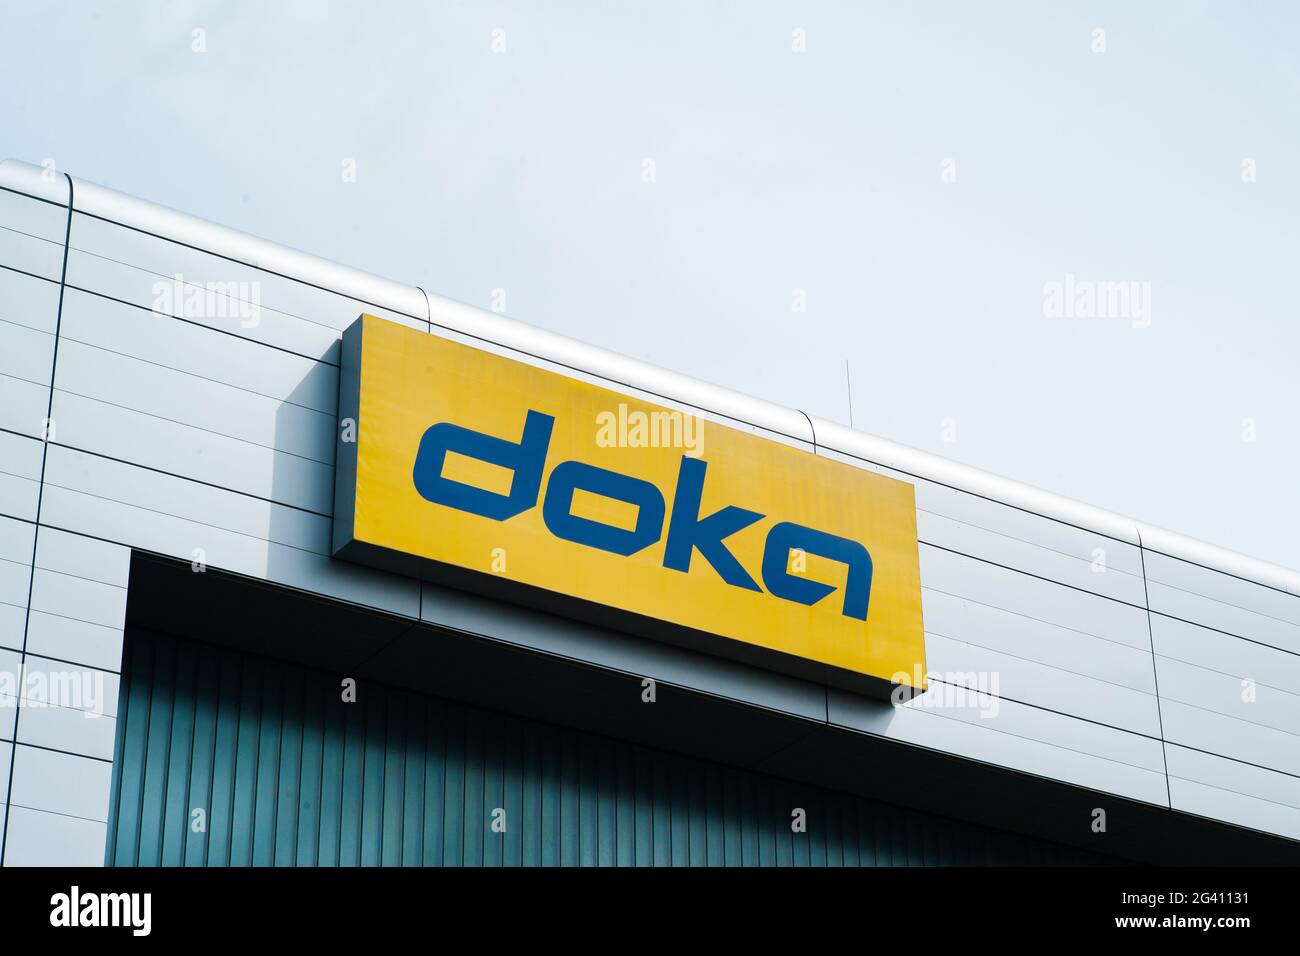 Amstetten, Austria - Mayo de 14 2021: Doka GmbH Formwork and Scaffolding Production Sede o Sede con el logotipo de la marca, parte del Grupo Umdasch. Foto de stock